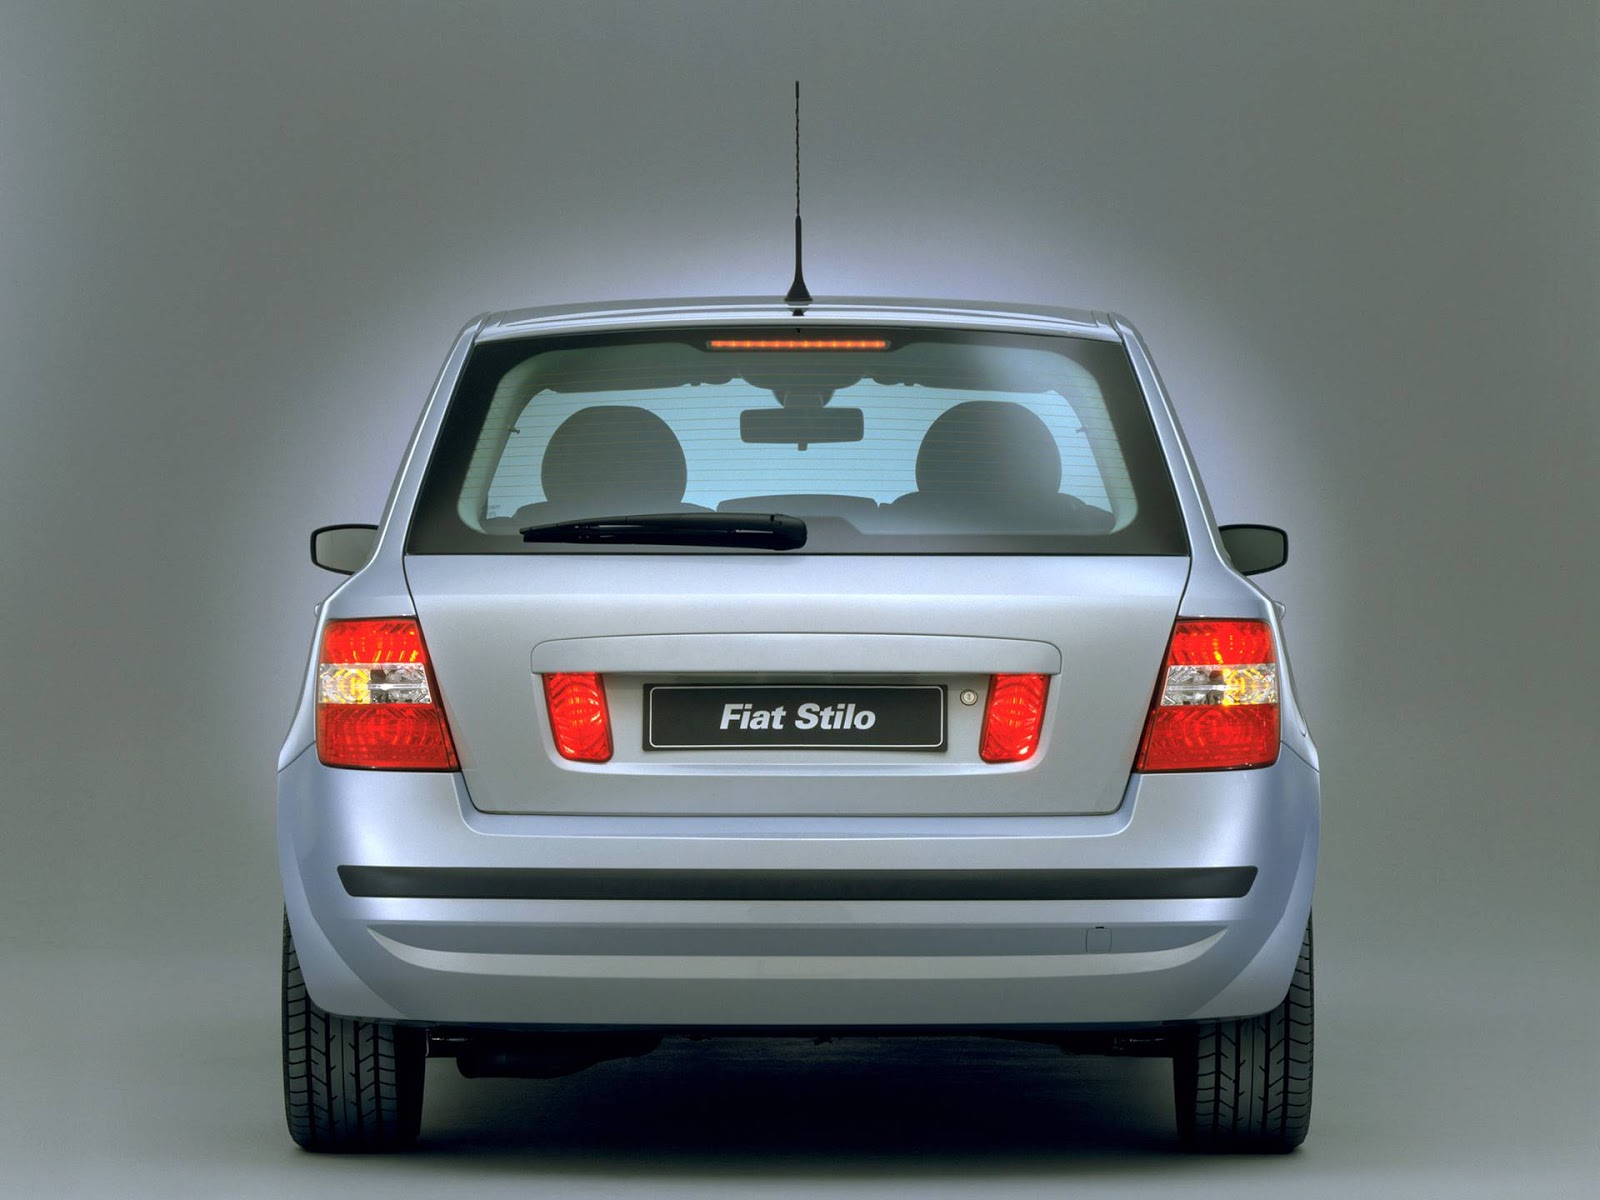 Fiat Stilo 2003 fotos e detalhes das versões lançamento